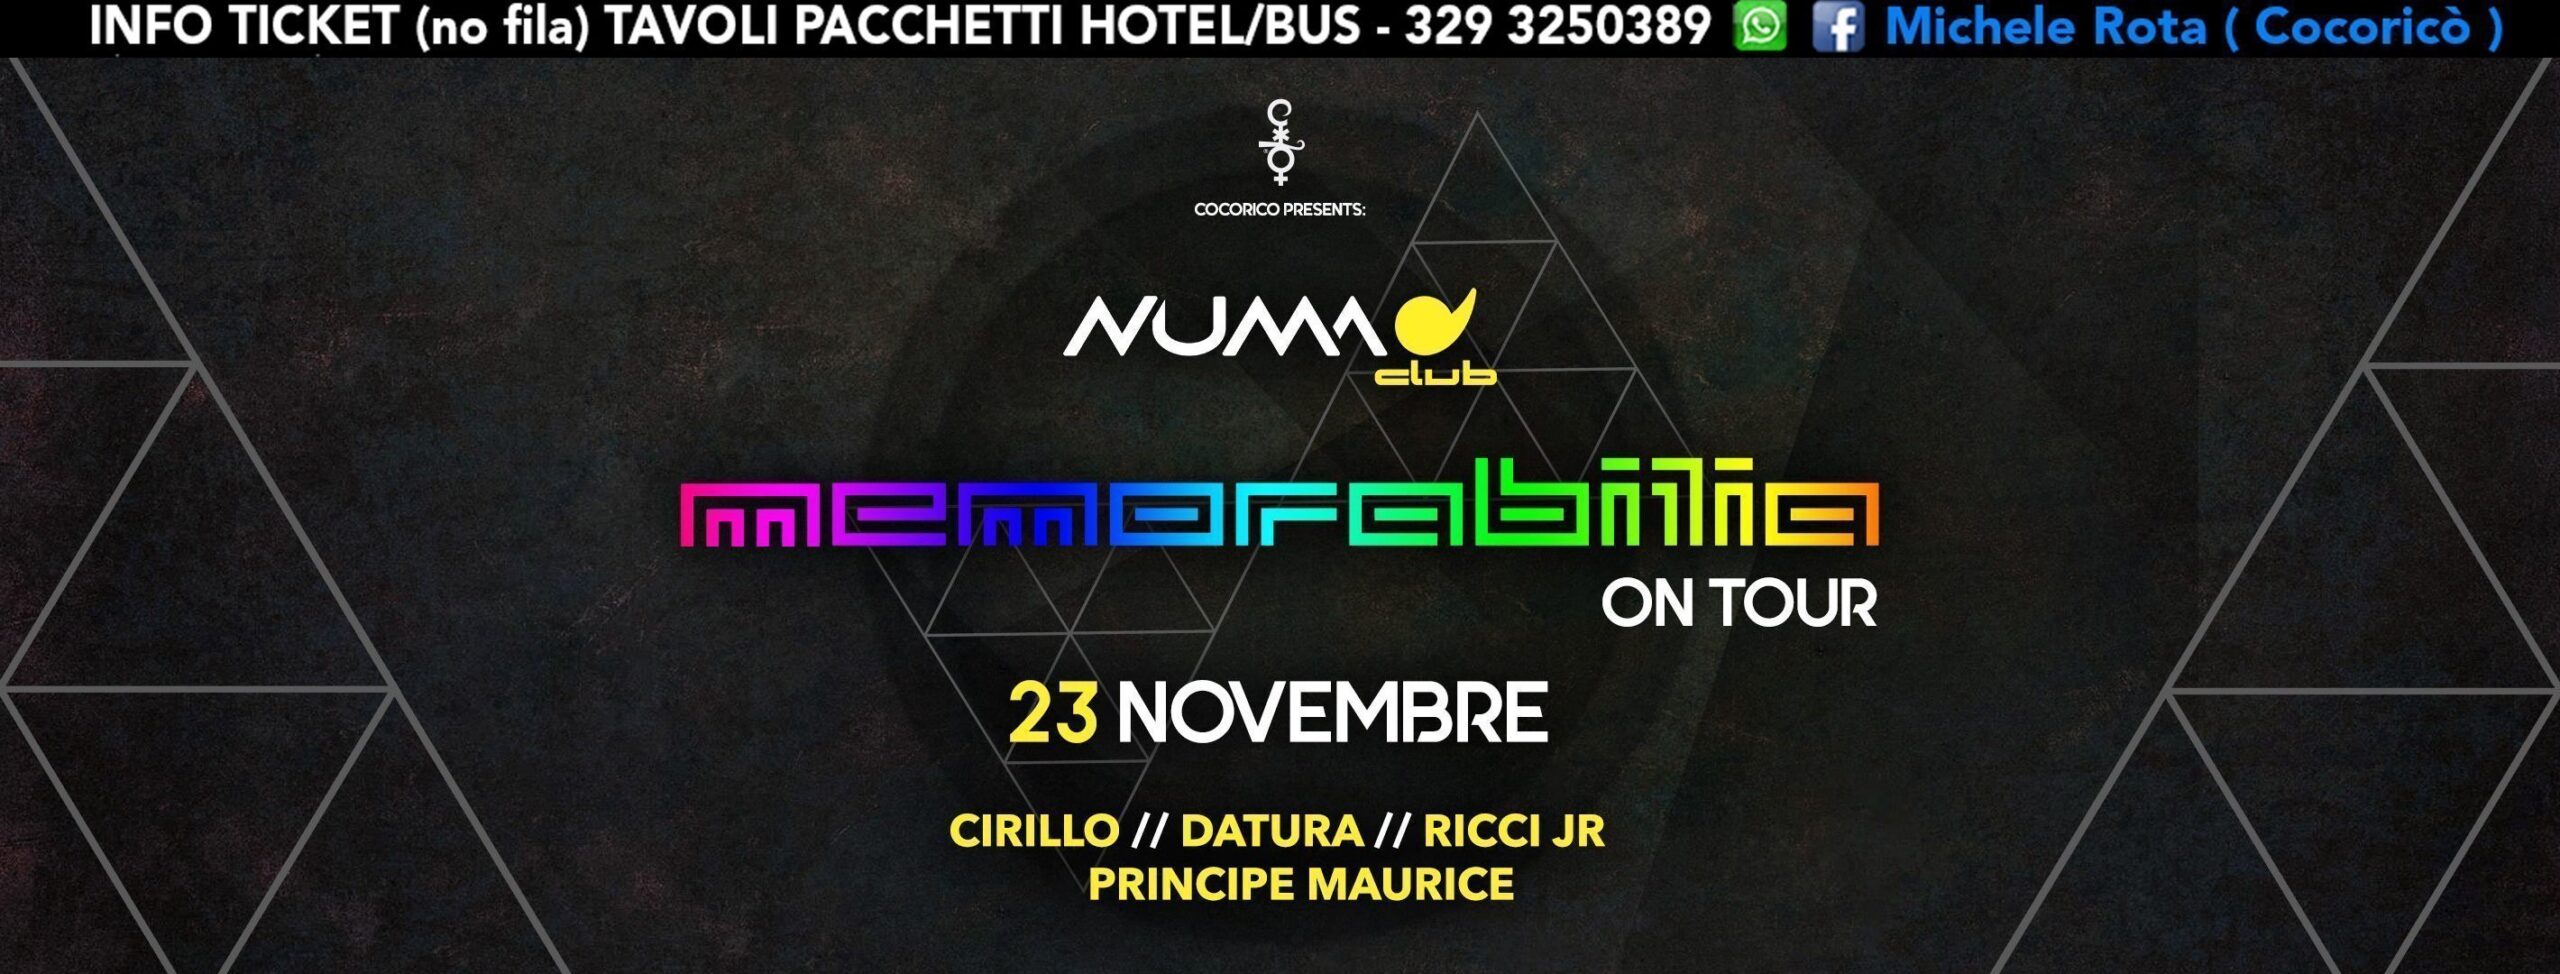 Memorabilia Numa Bologna 23 Novembre 2018 Ticket Pacchetti Hotel